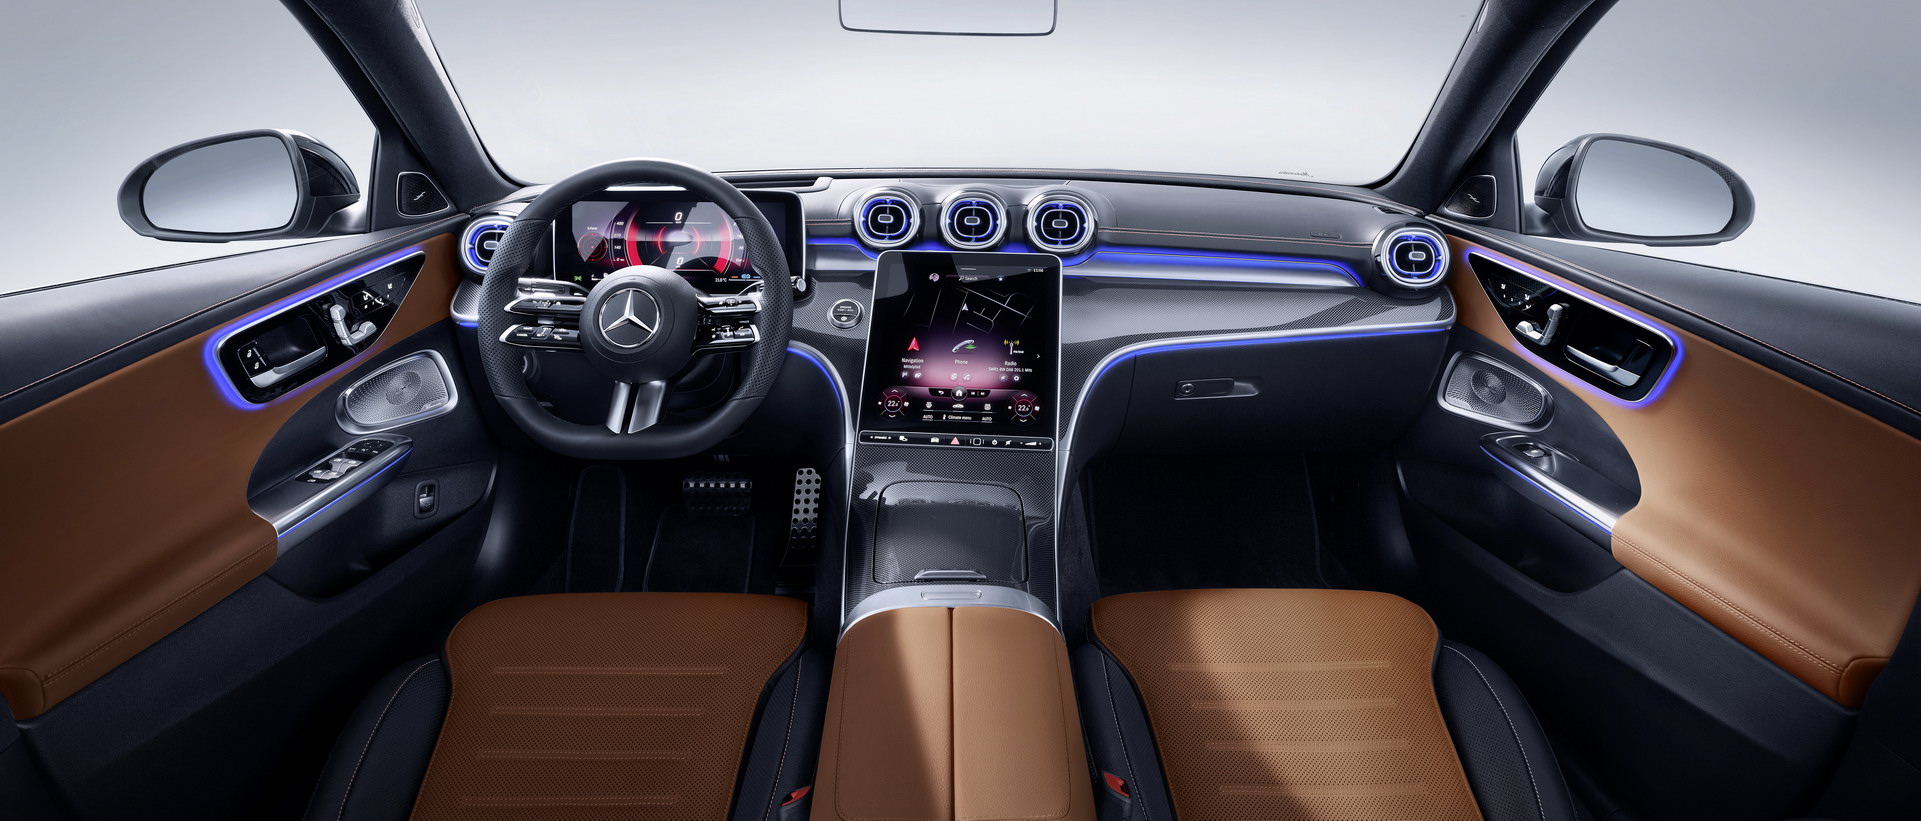 2021 Mercedes-Benz C-Serisi tanıtıldı! İşte tasarımı ve özellikleri